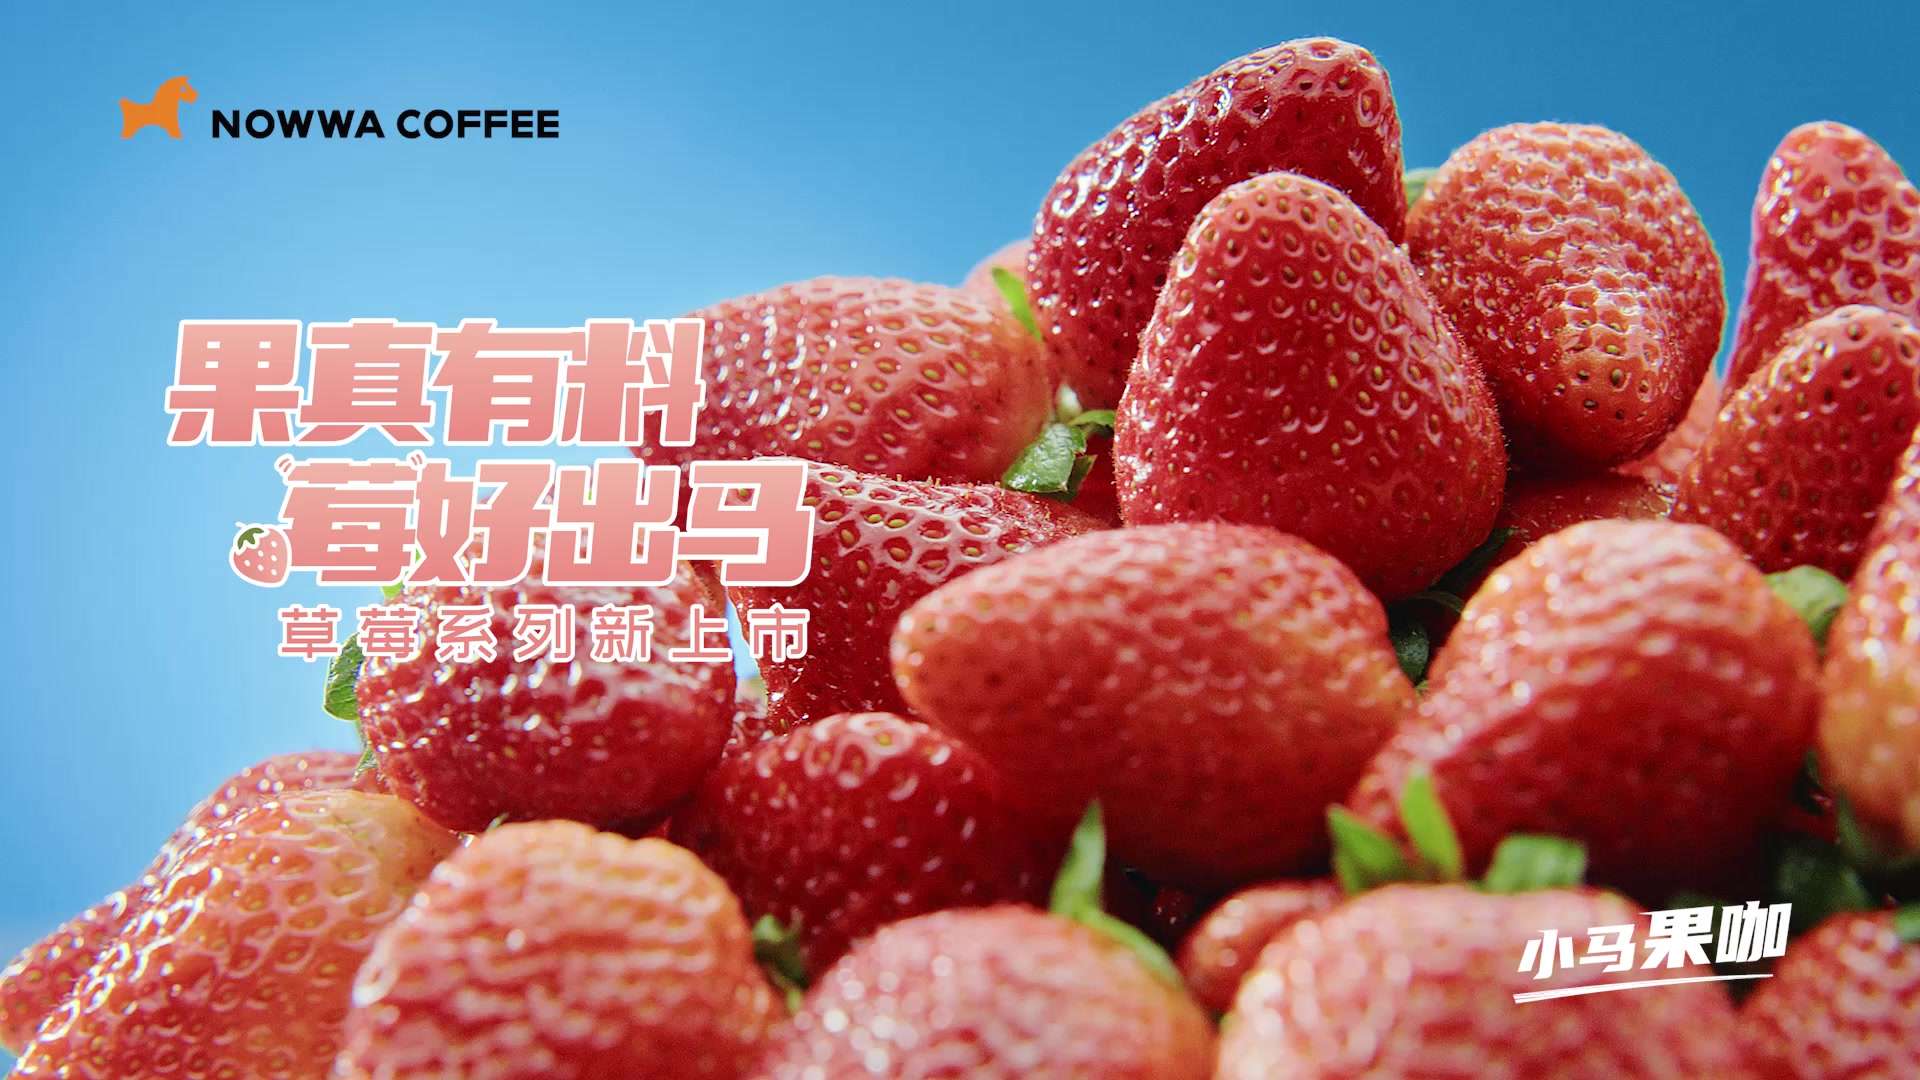 挪瓦咖啡-草莓系列